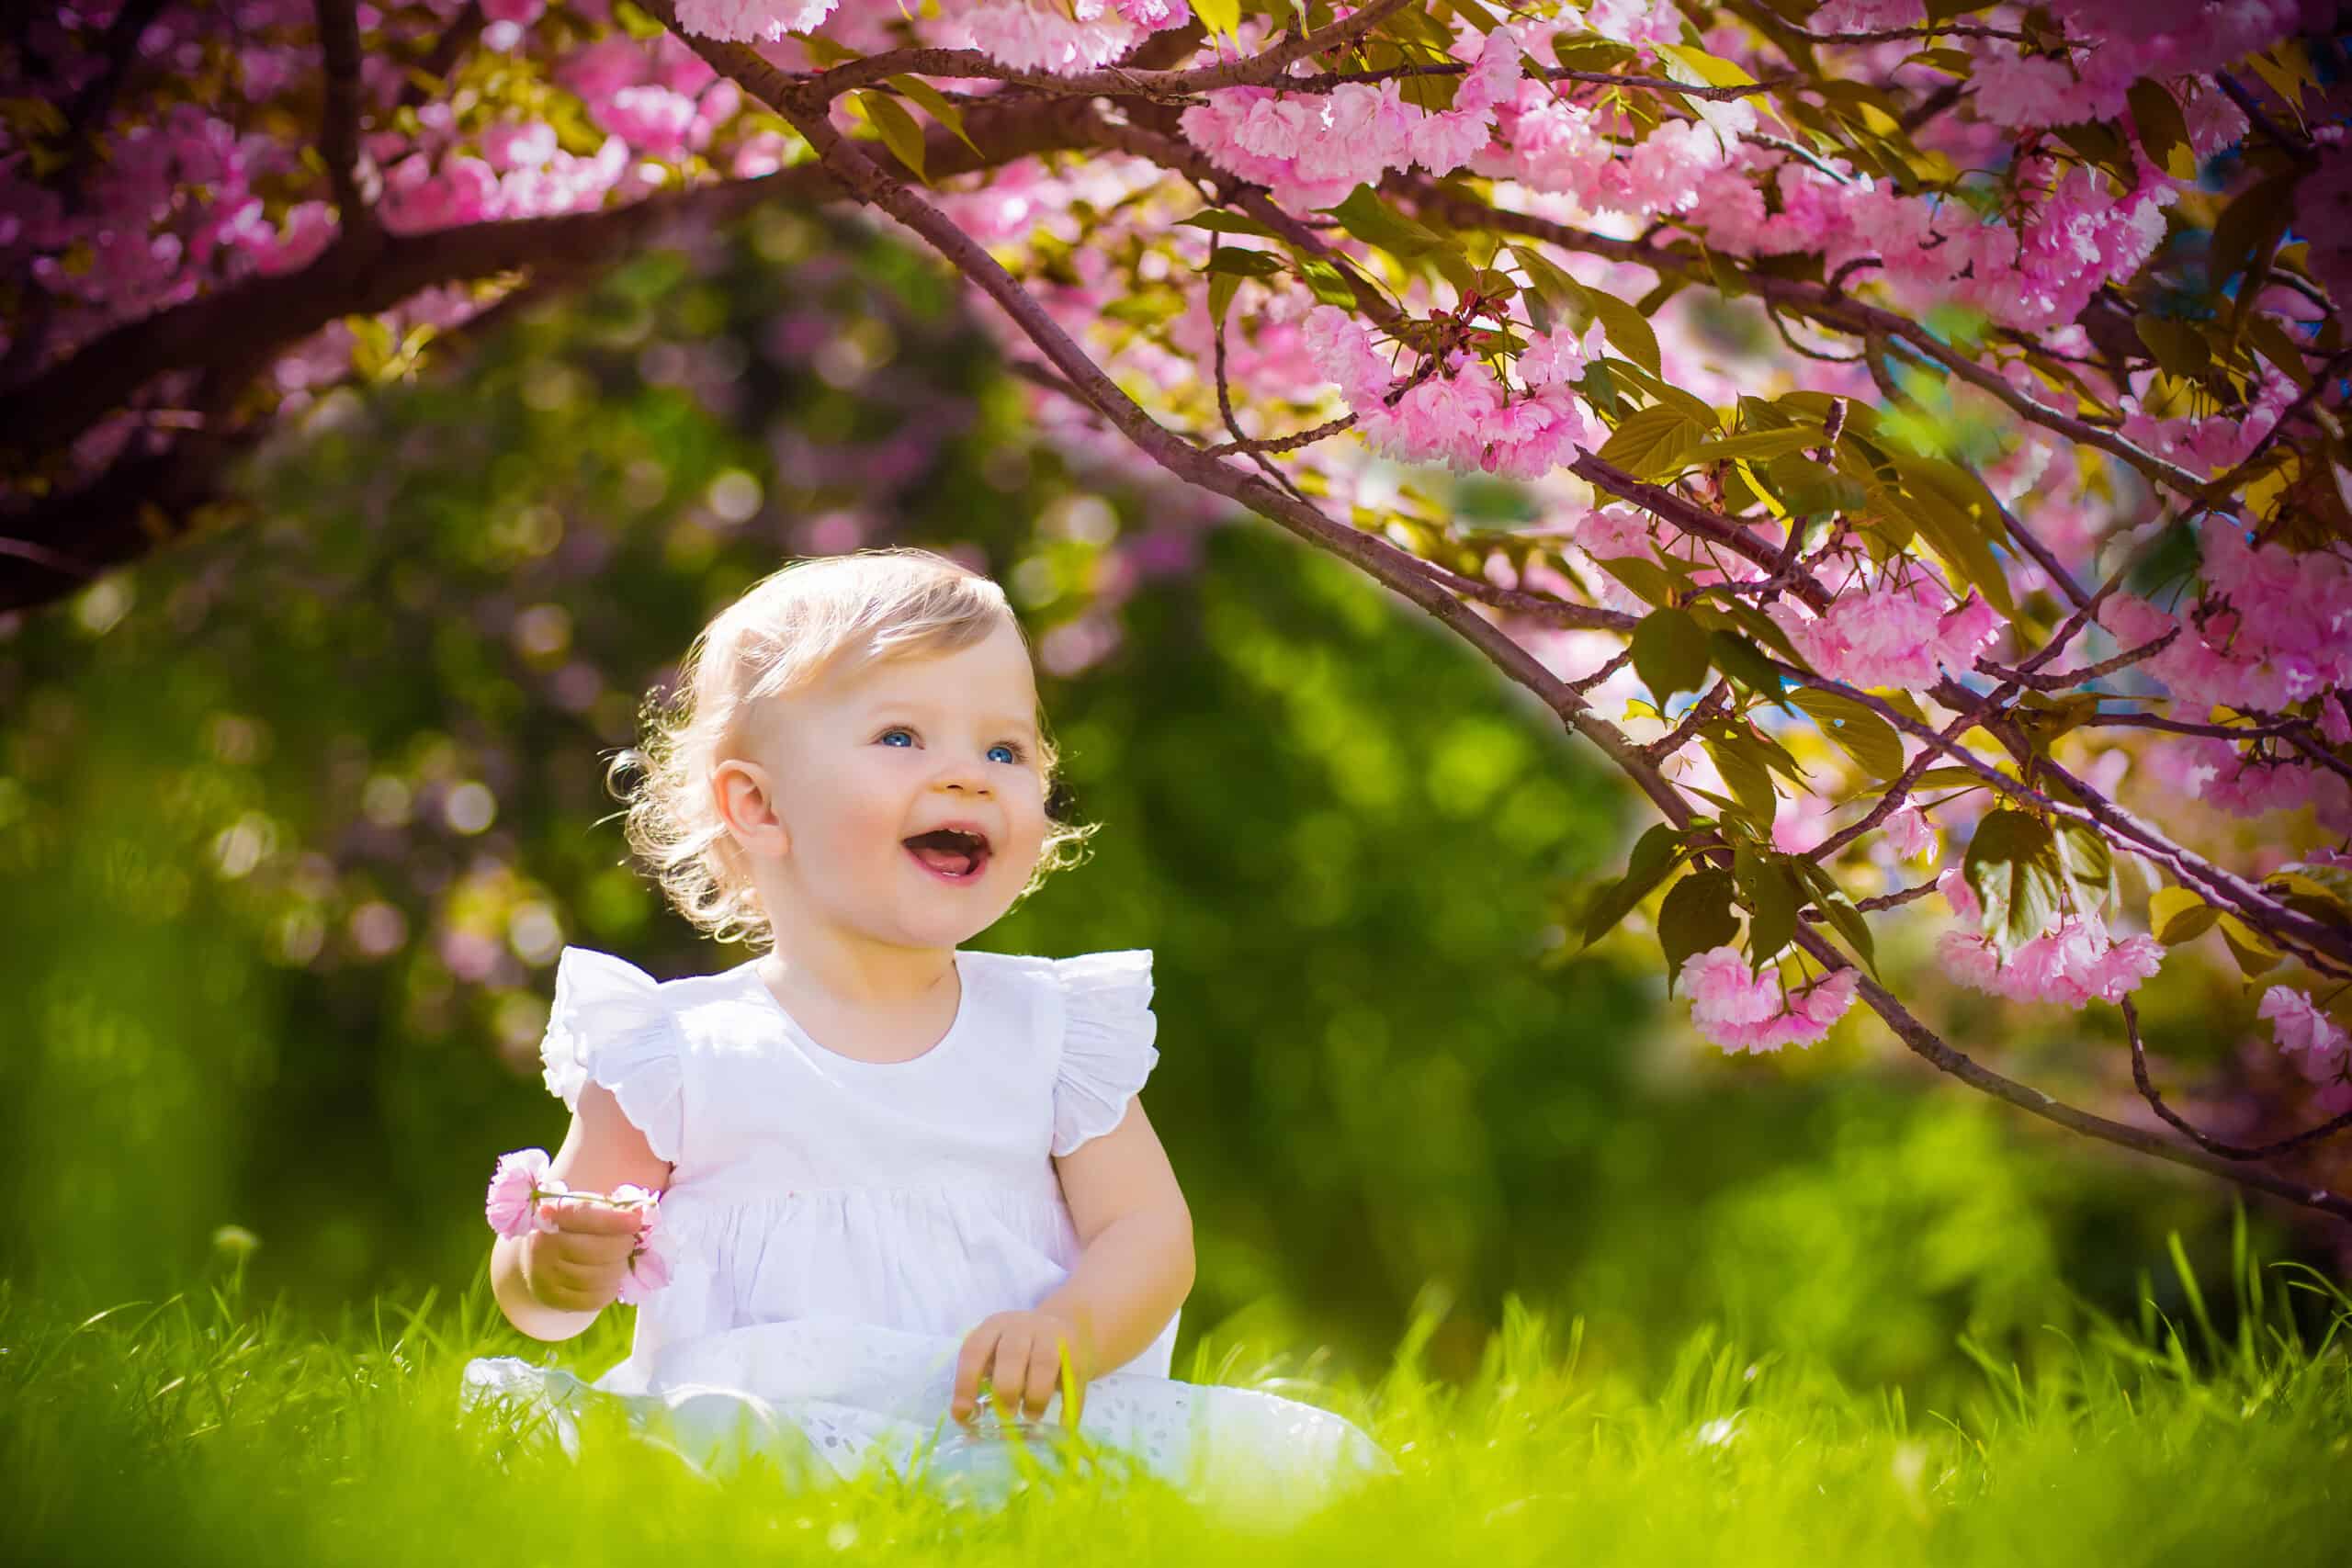 cute adorable nice baby girl in white spring dress smiling sitting under sakura tree